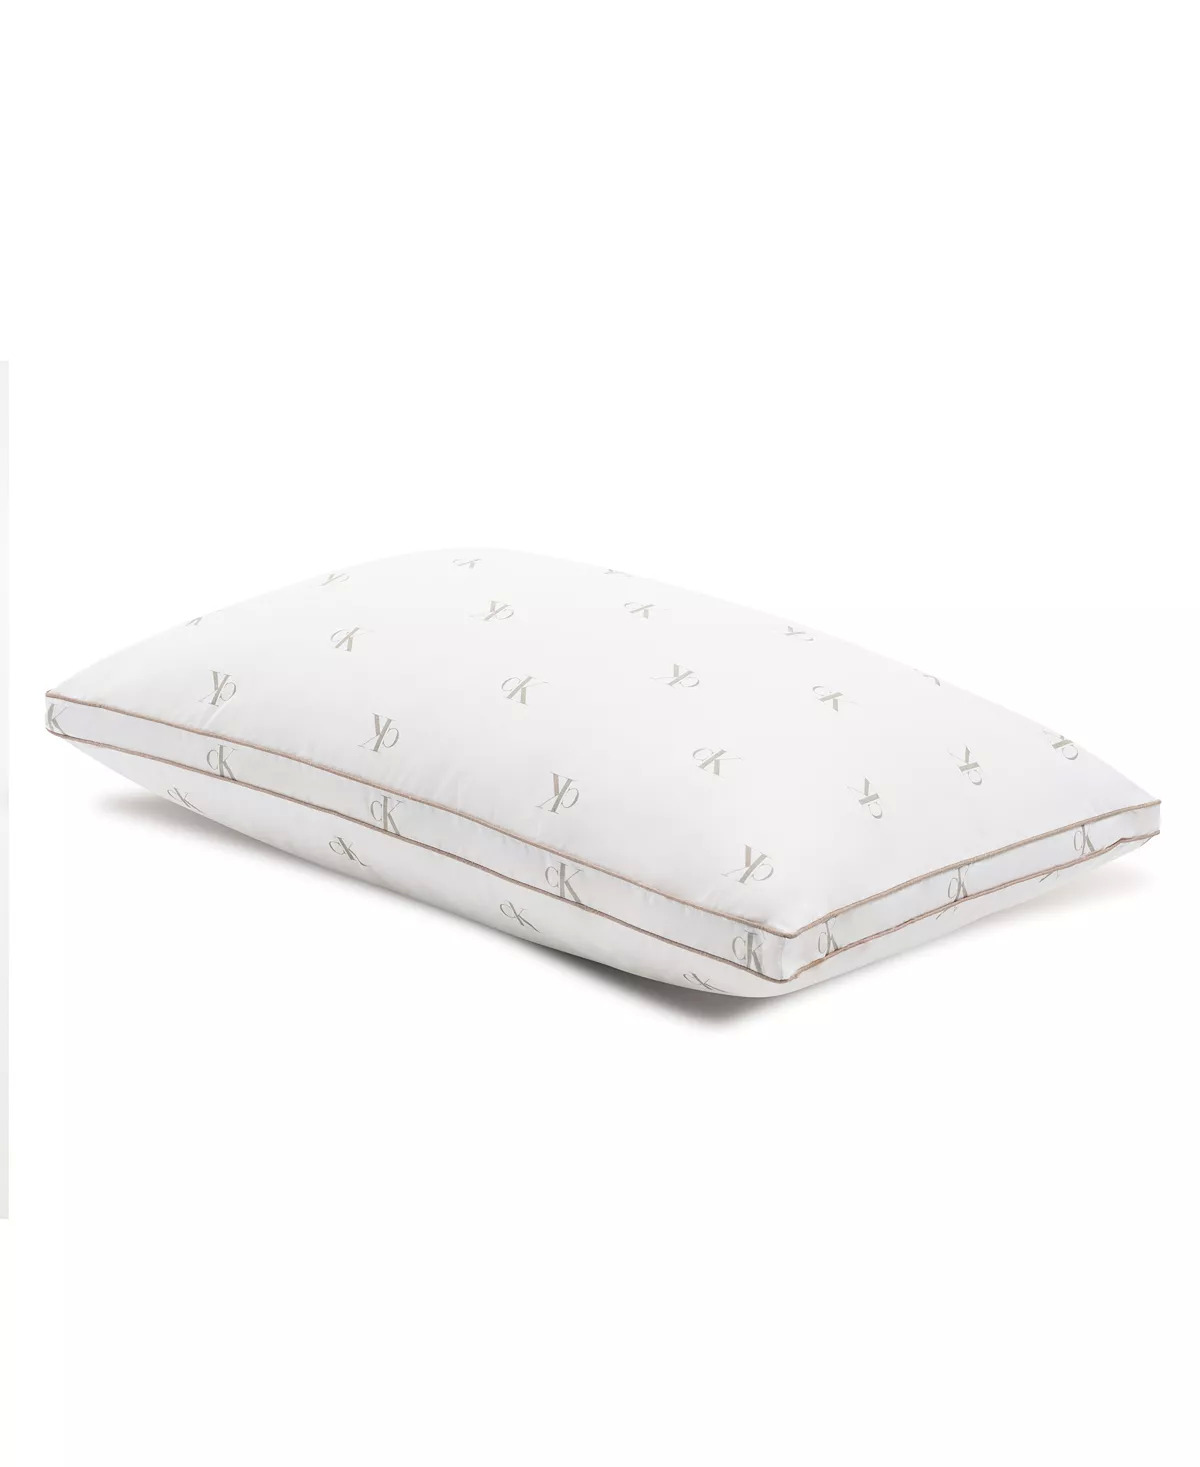 Calvin Klein Monogram Logo Density Collection Cotton Pillow, Standard/Queen - $9.99